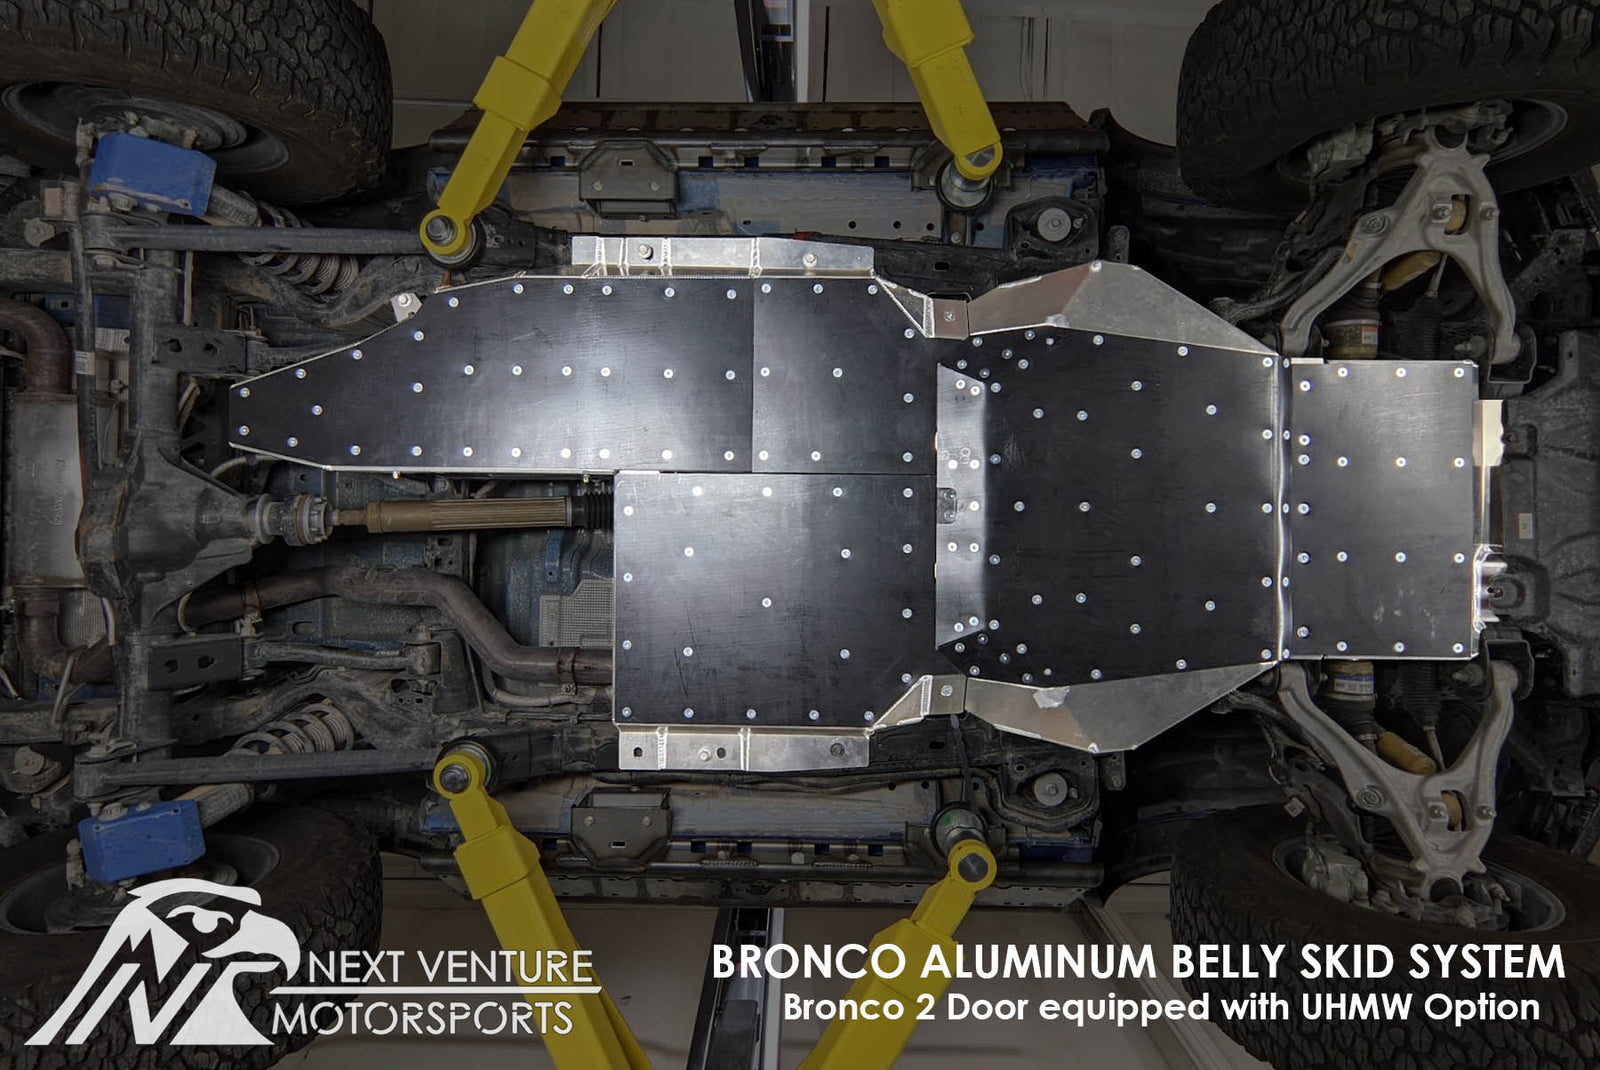 Bronco Aluminum Belly Skids